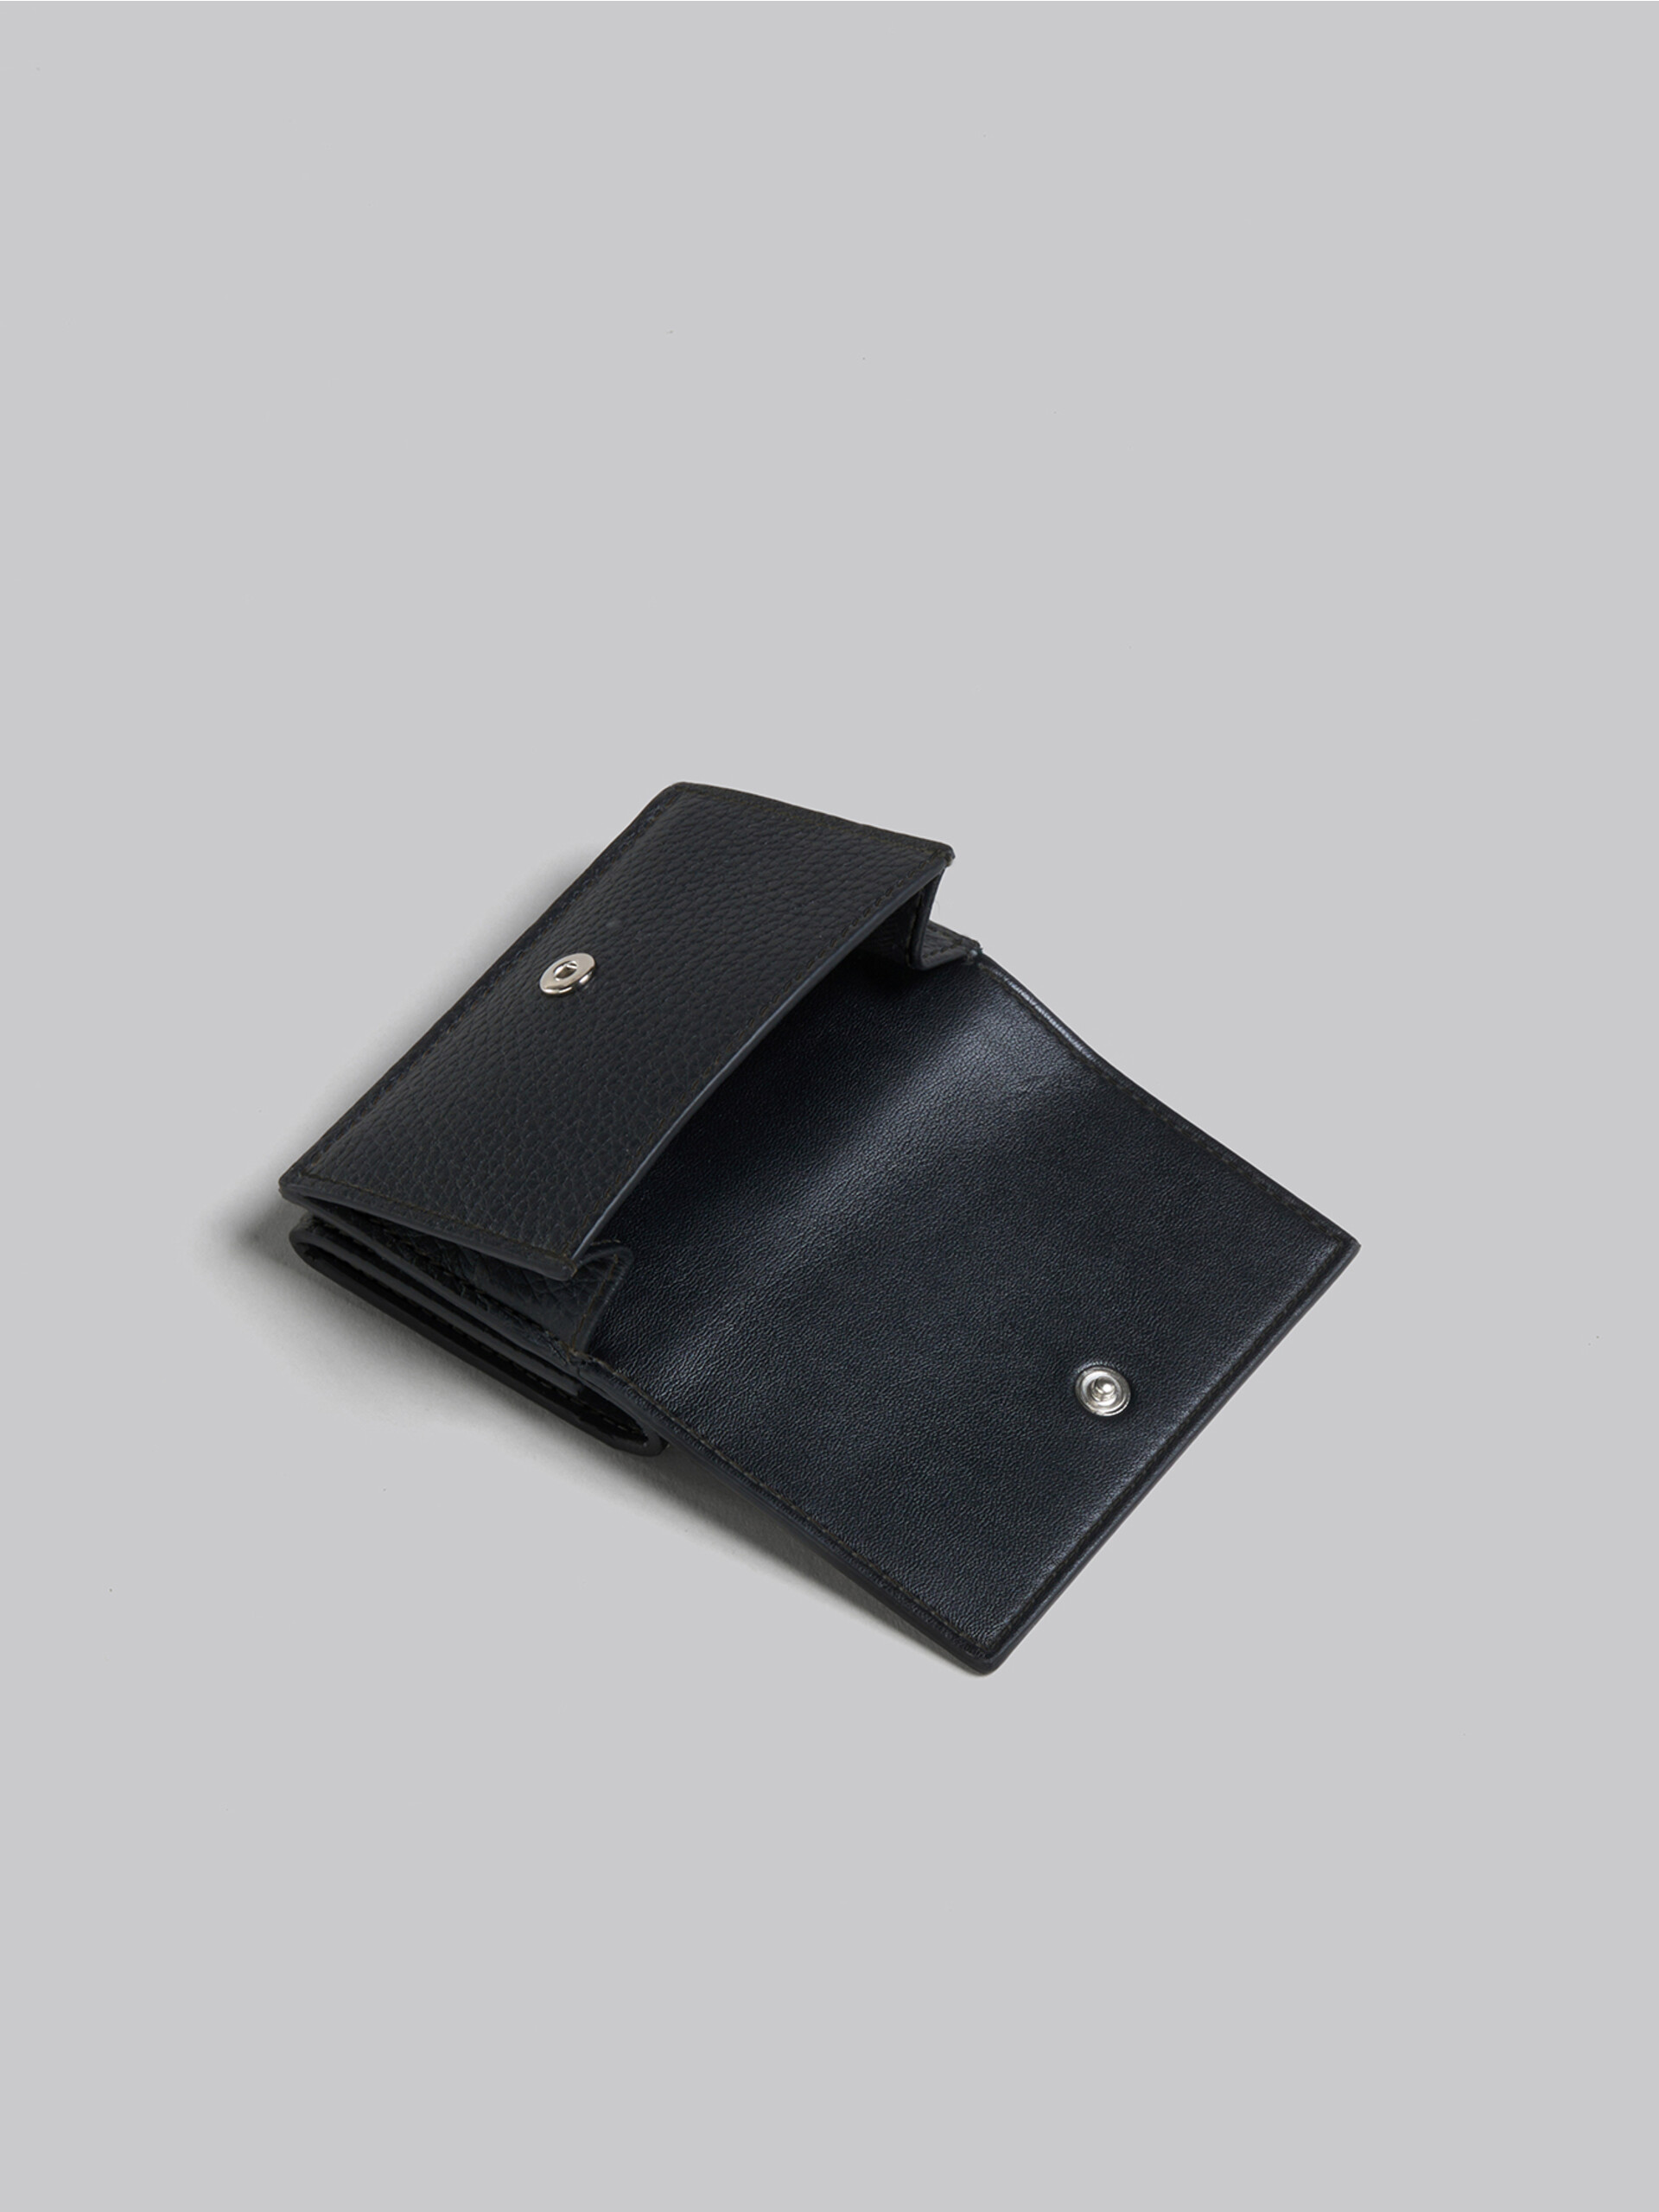 ブラック レザー製三つ折りウォレット - 財布 - Image 4